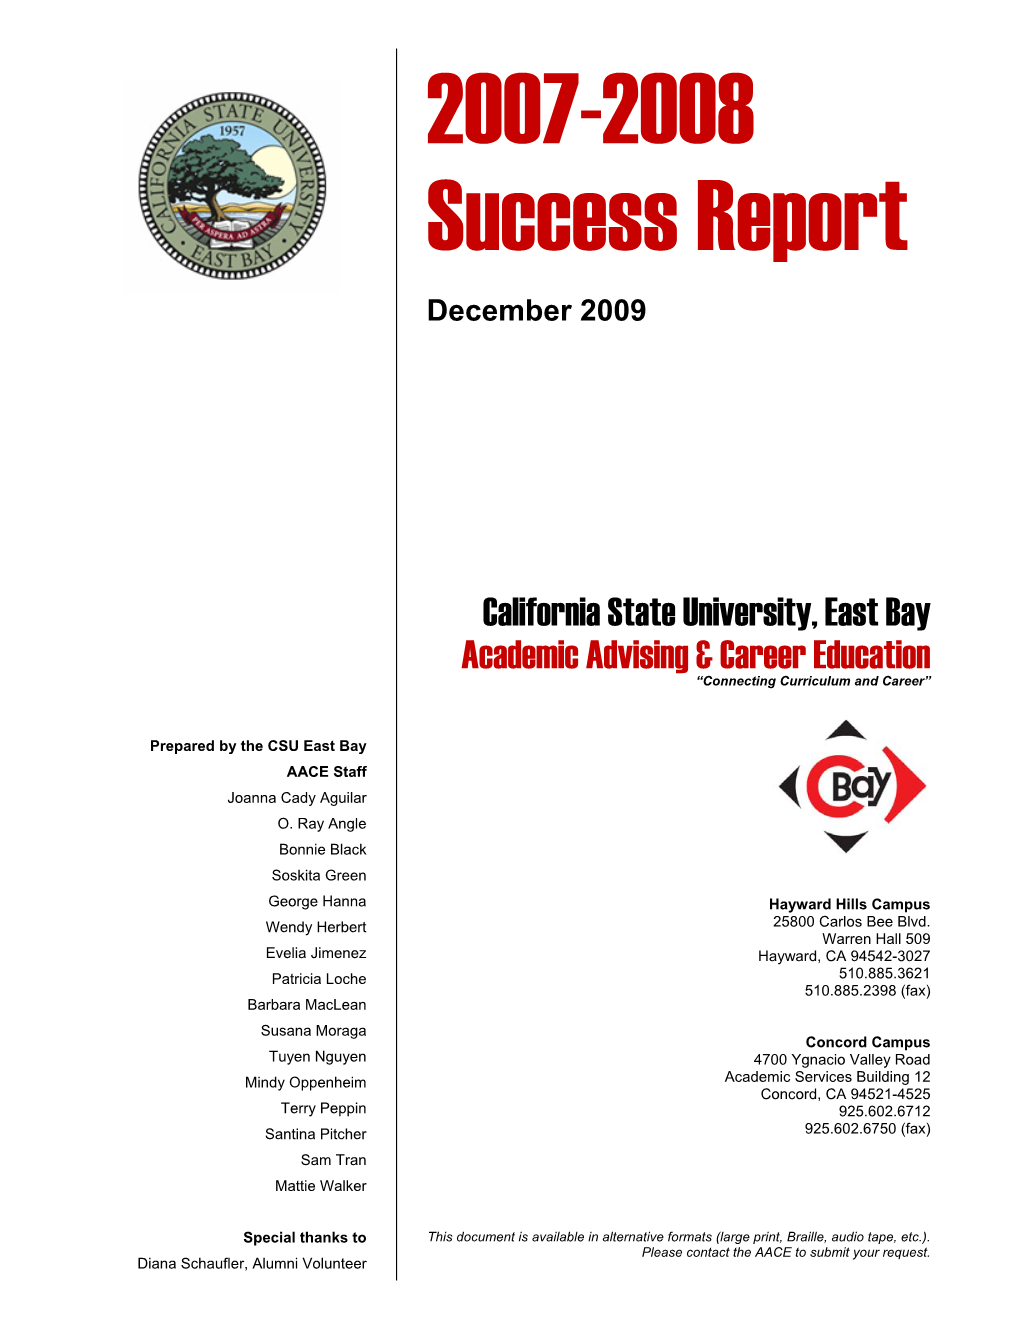 2007-2008 Success Report